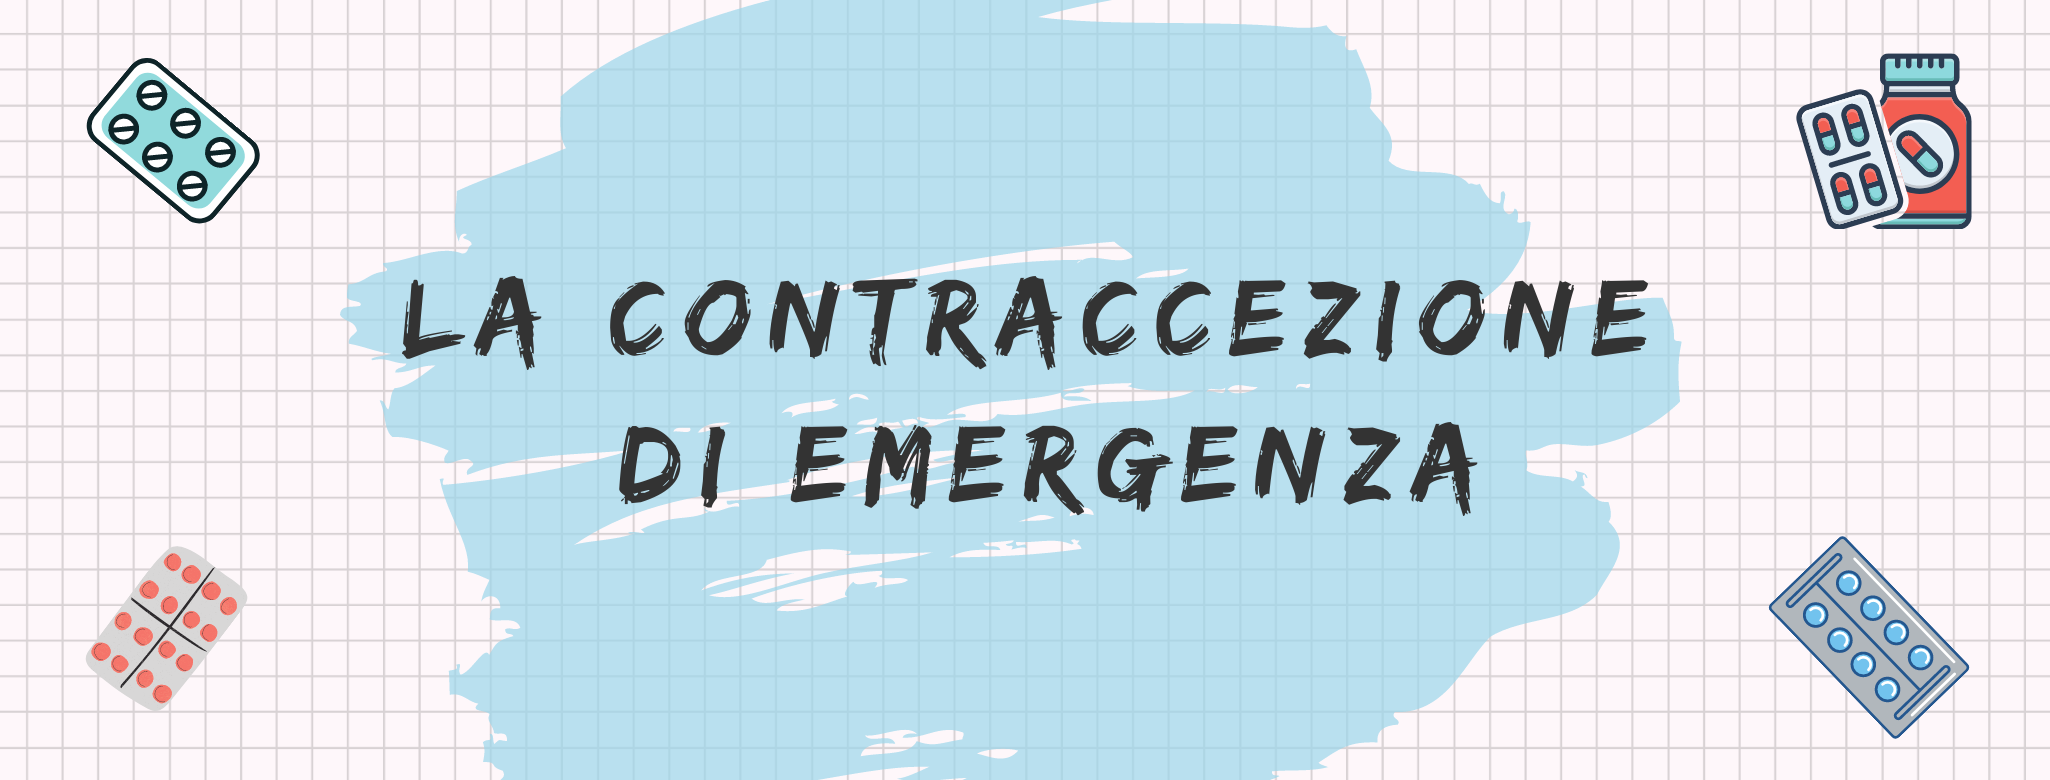 Copertina Contraccezione di emergenza1